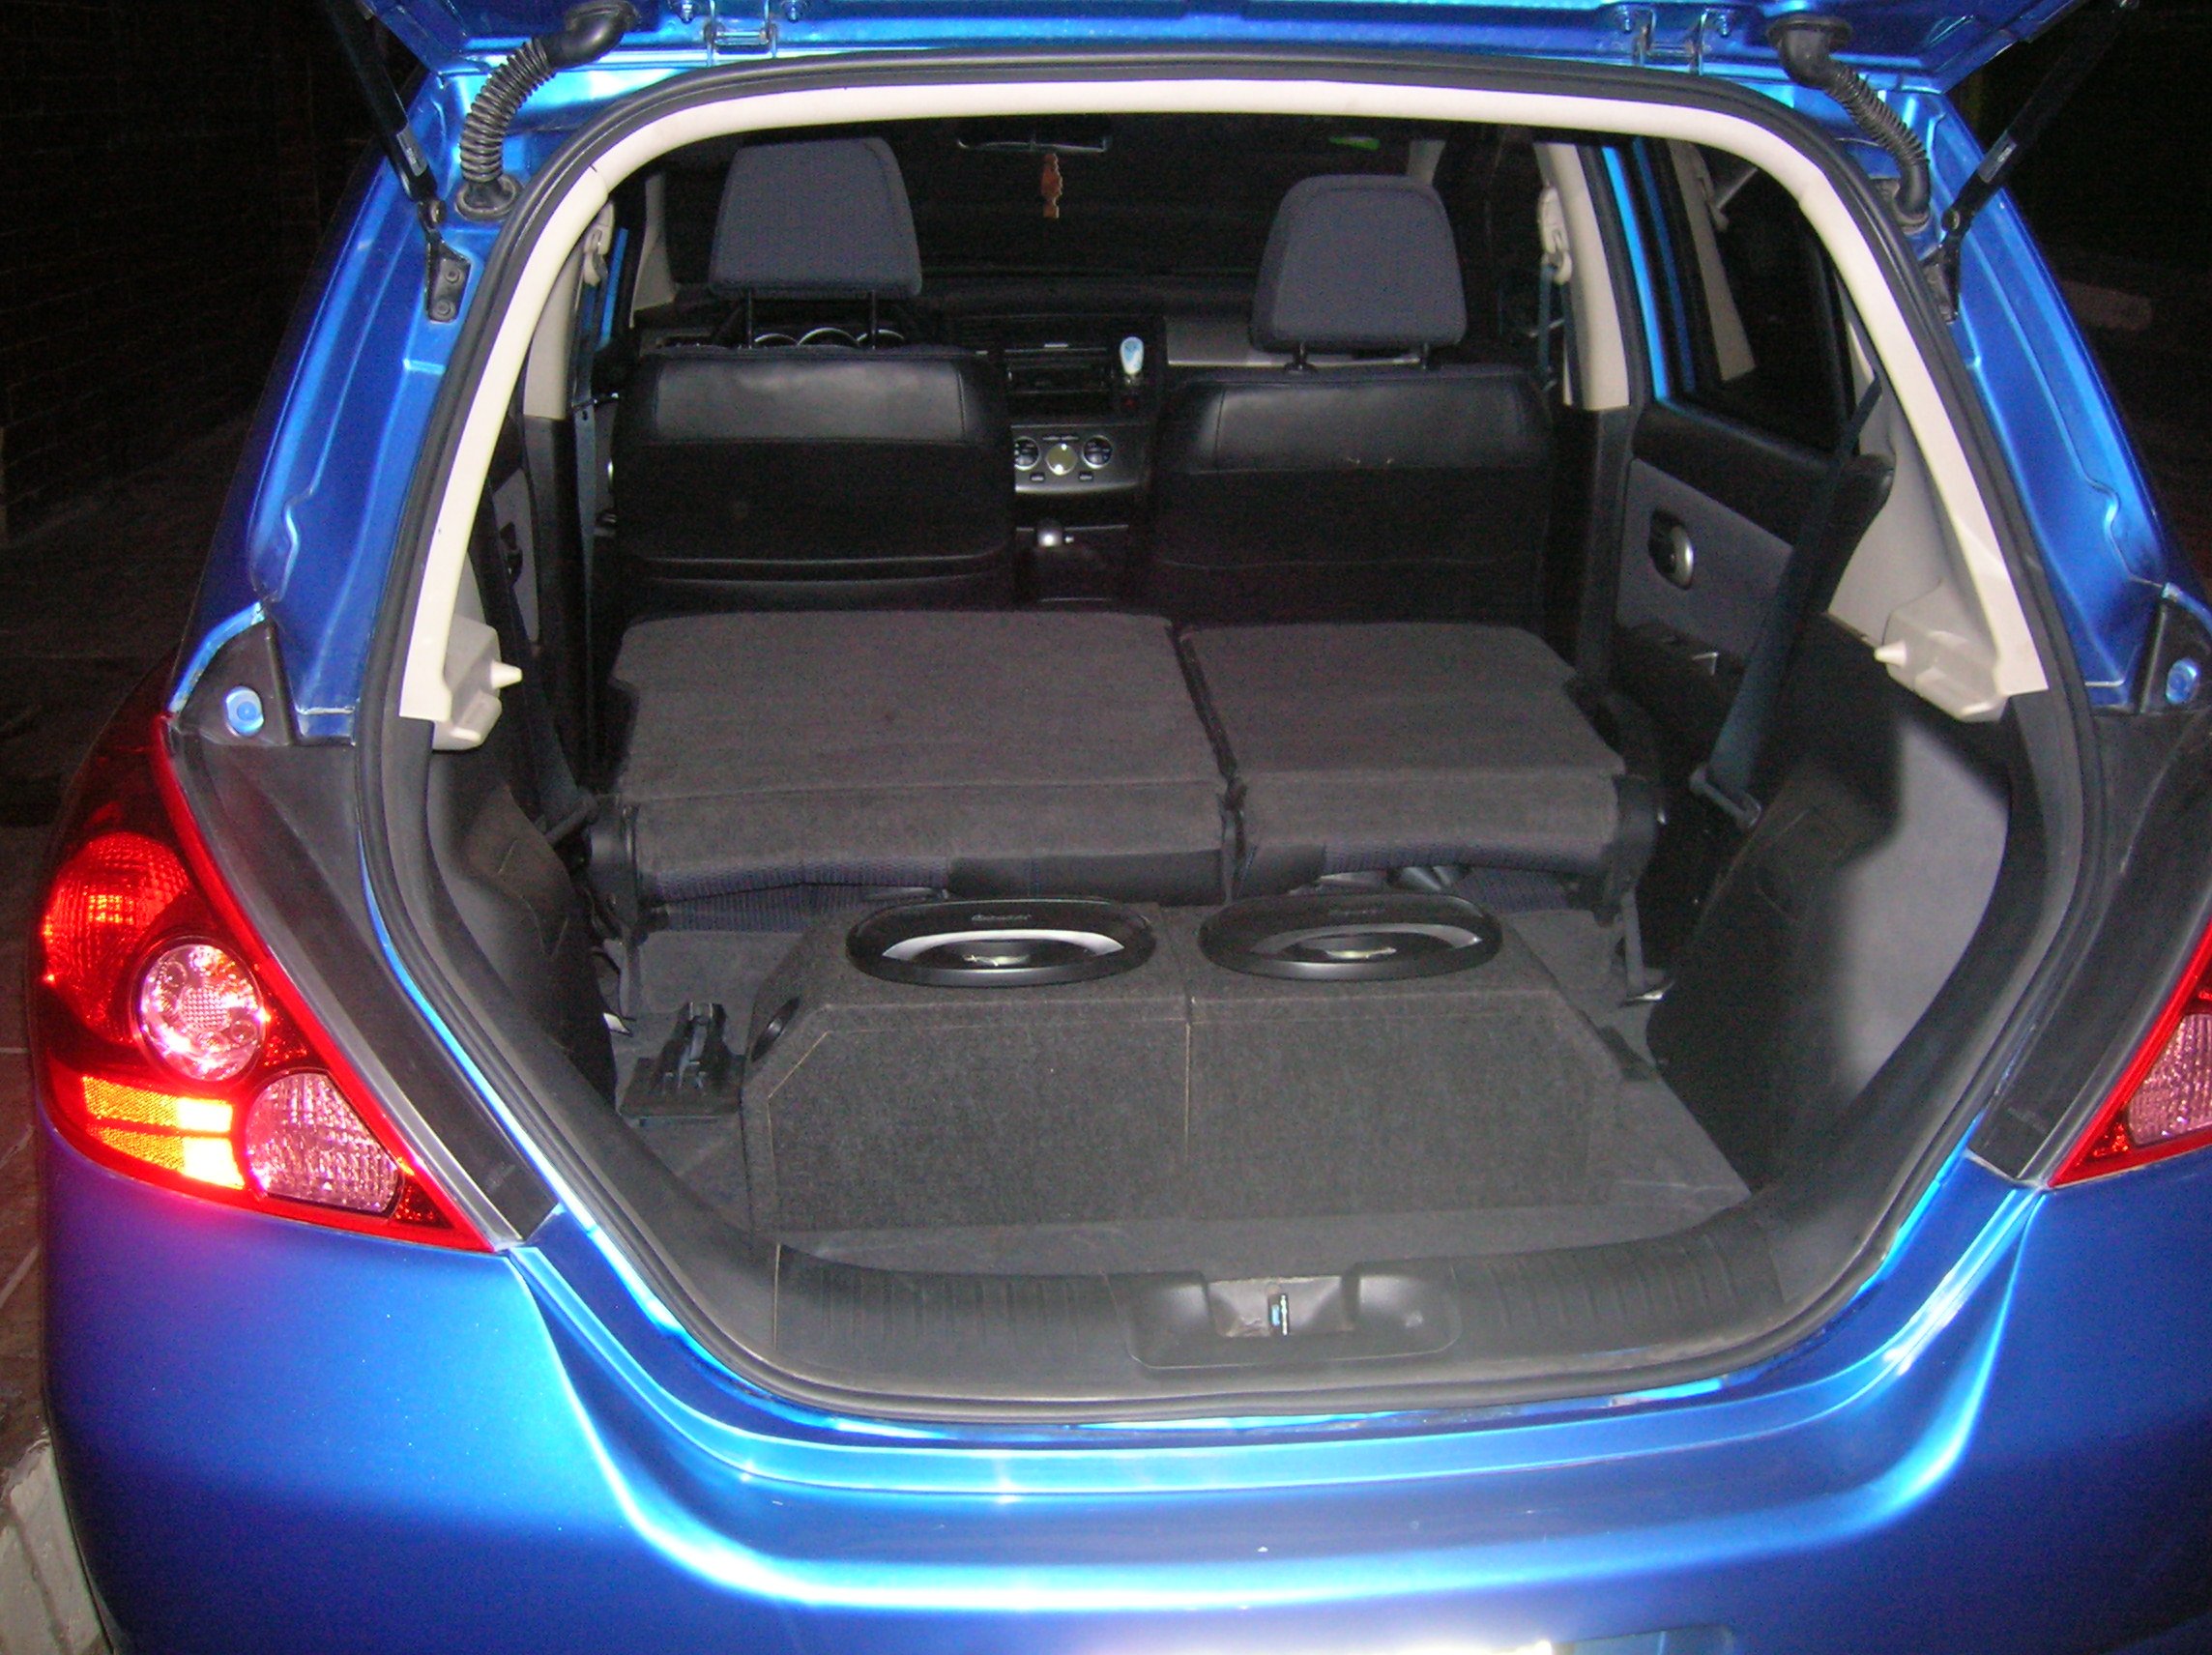 Nissan Tiida 2015 салон багажник